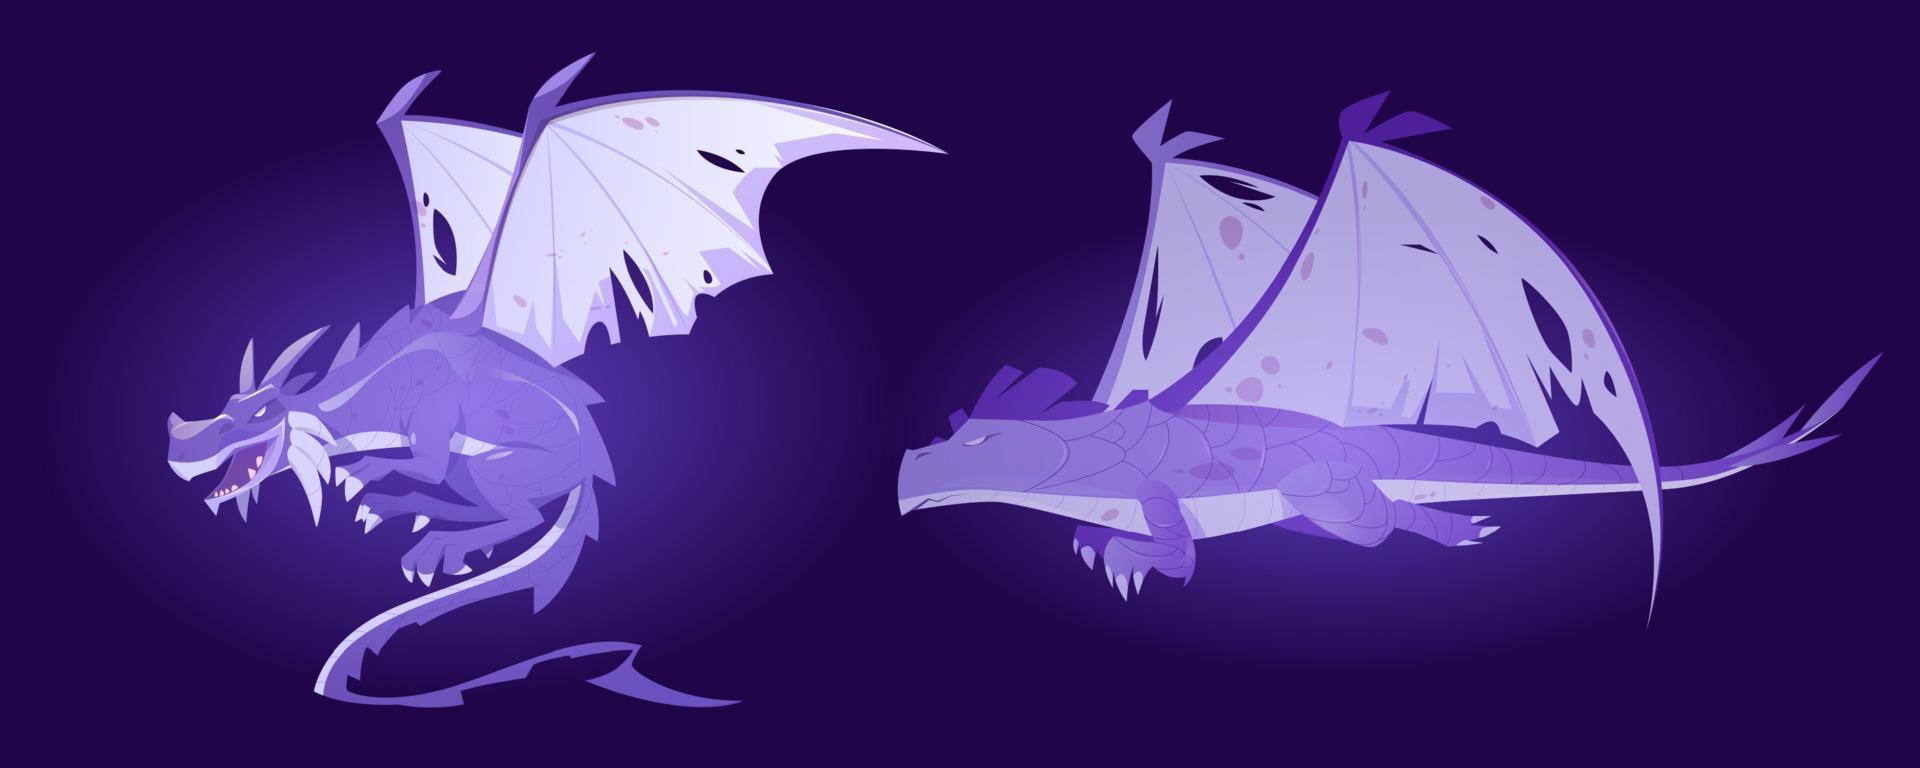 fantasmas de dragones de cuento de hadas, espíritus de monstruos mágicos vector